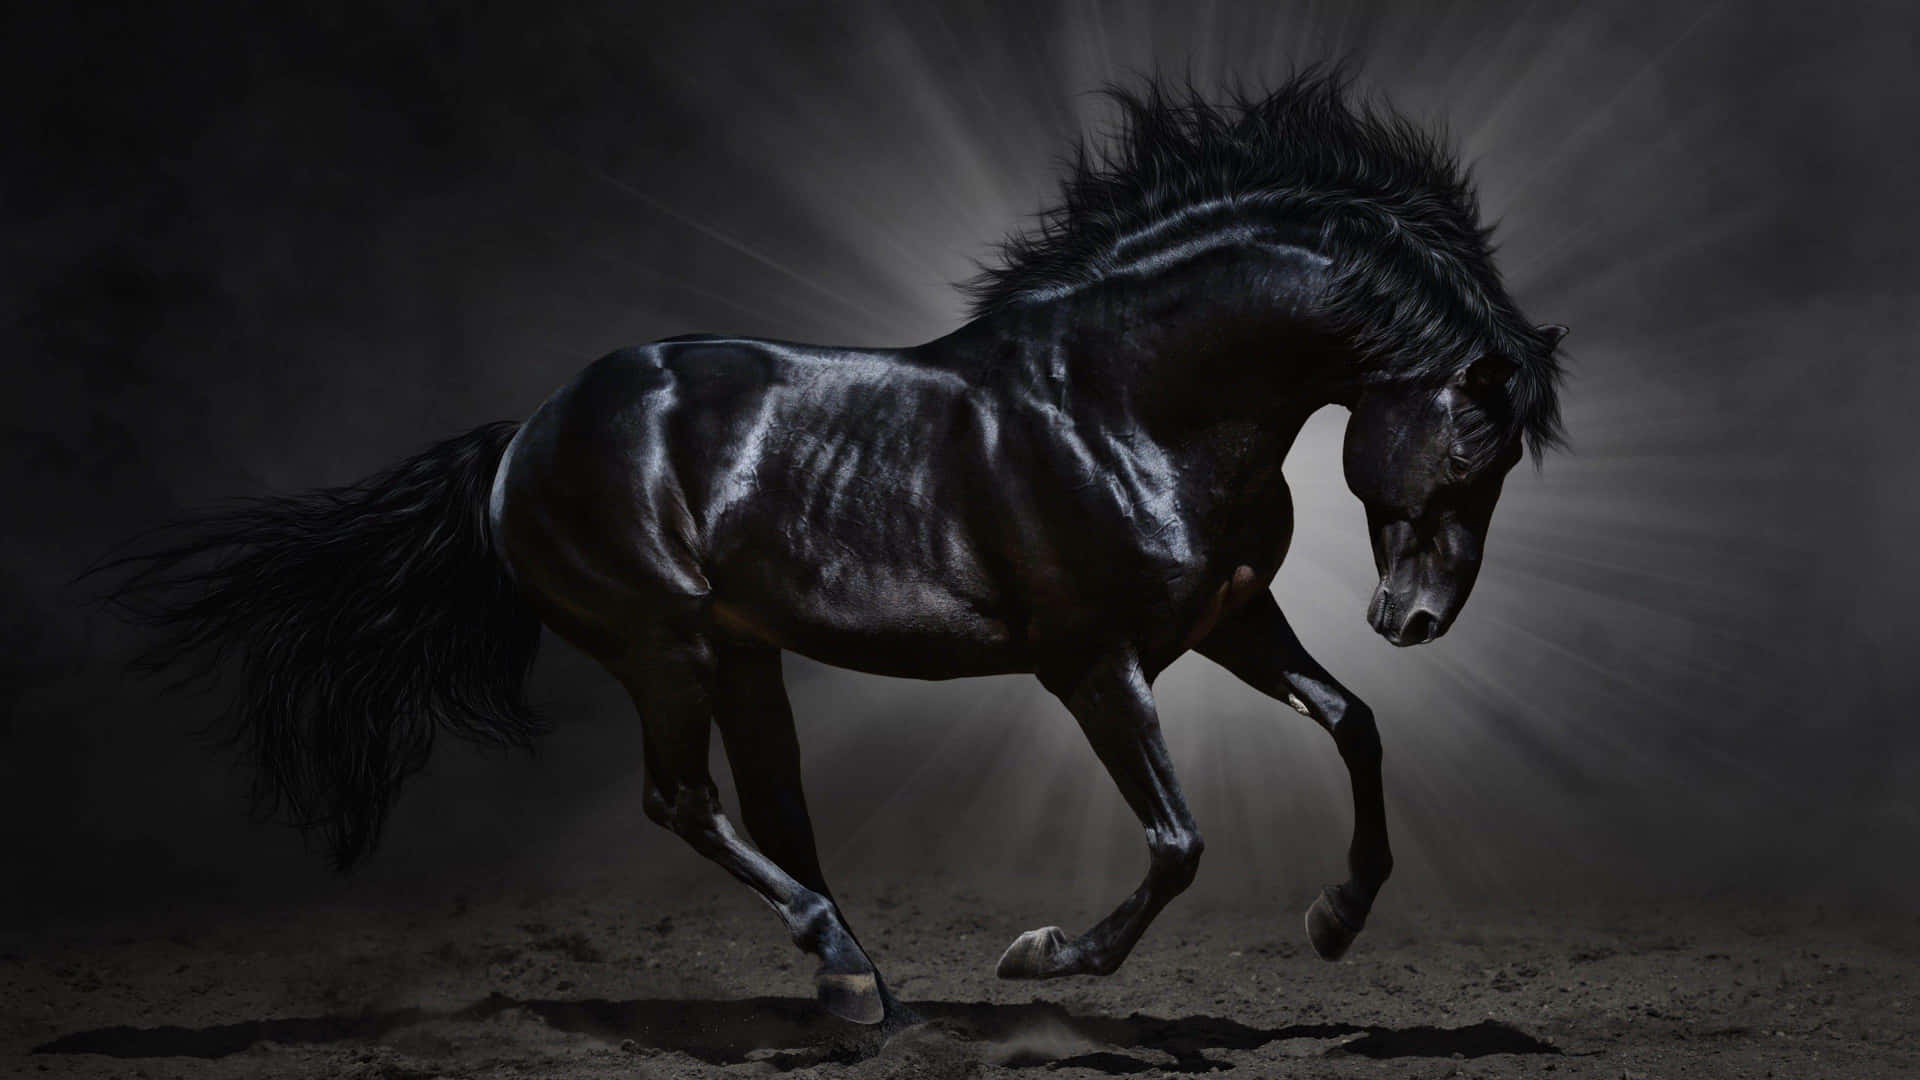 Mustanghästsvart Galopperande Mörk Bild